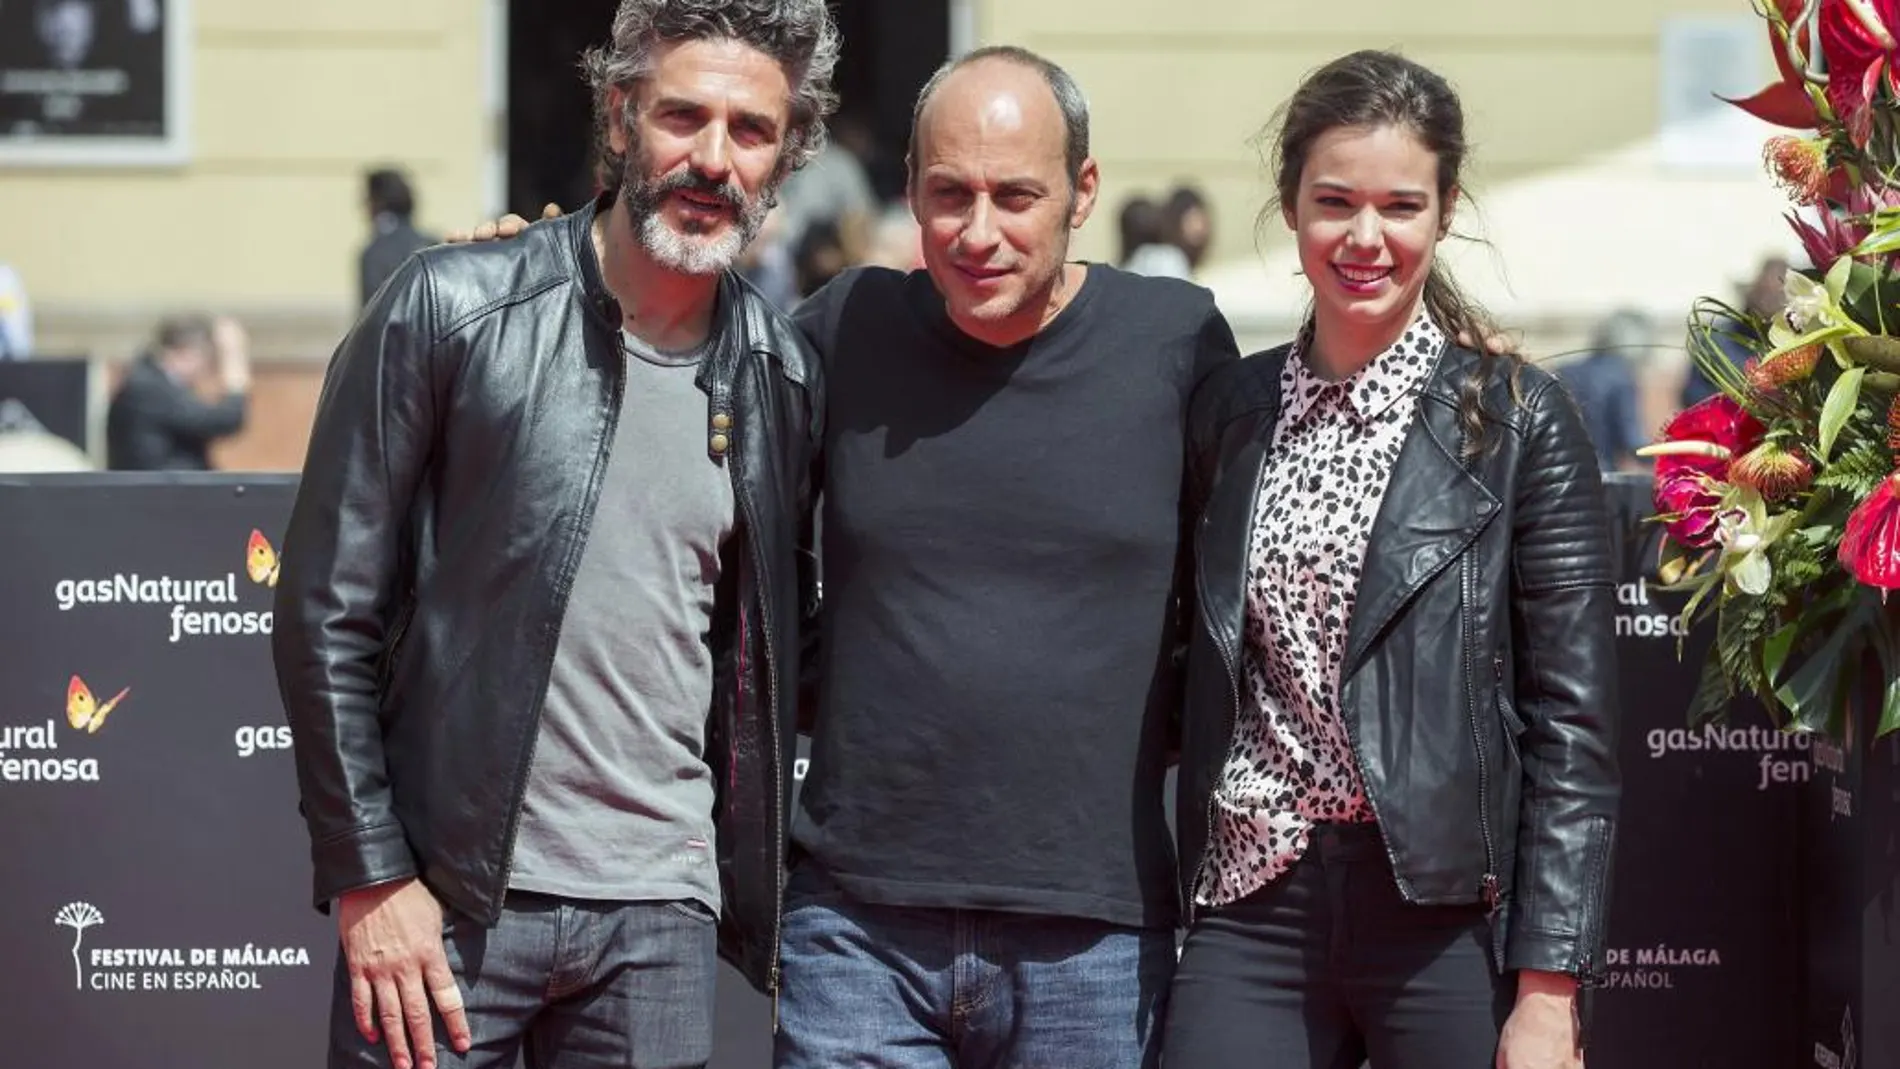 El director argentino Martín Hodara posa con Leonardo Sbaraglia y Laia Costa, tras presentar su película "Nieve negra".